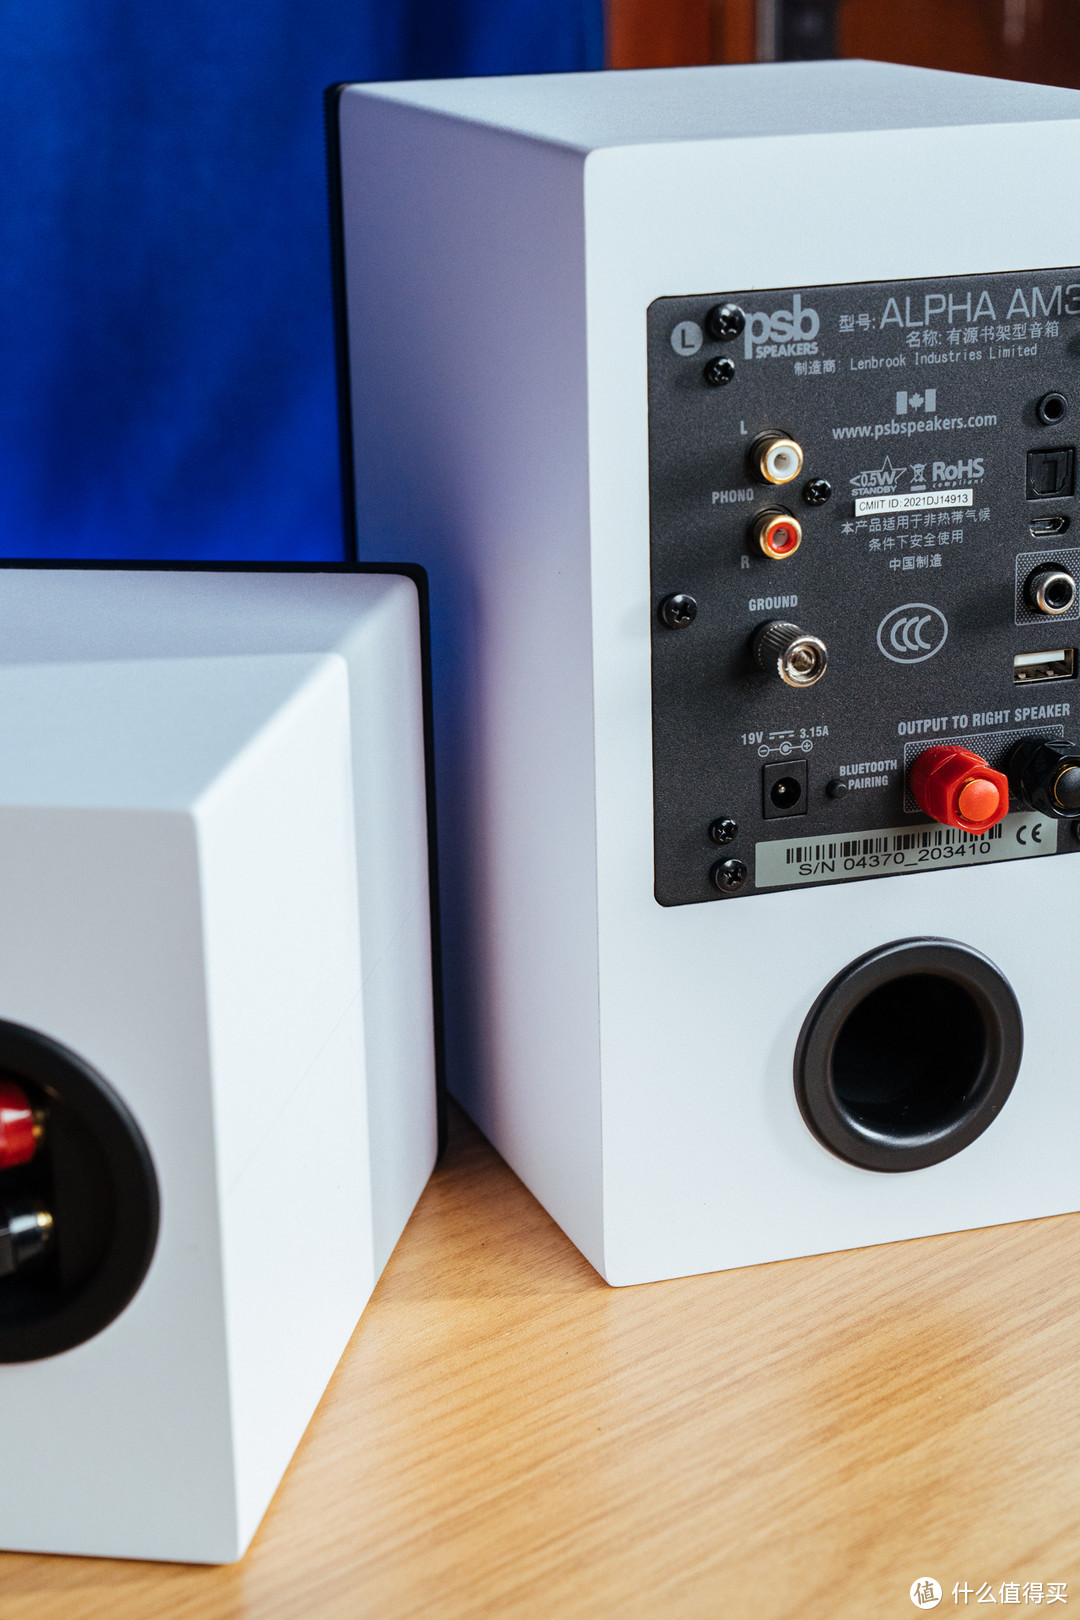 小小的箱子 大大的梦想——内藏WAVES音频插件的「PSB Alpha AM3 桌面式蓝牙音箱」